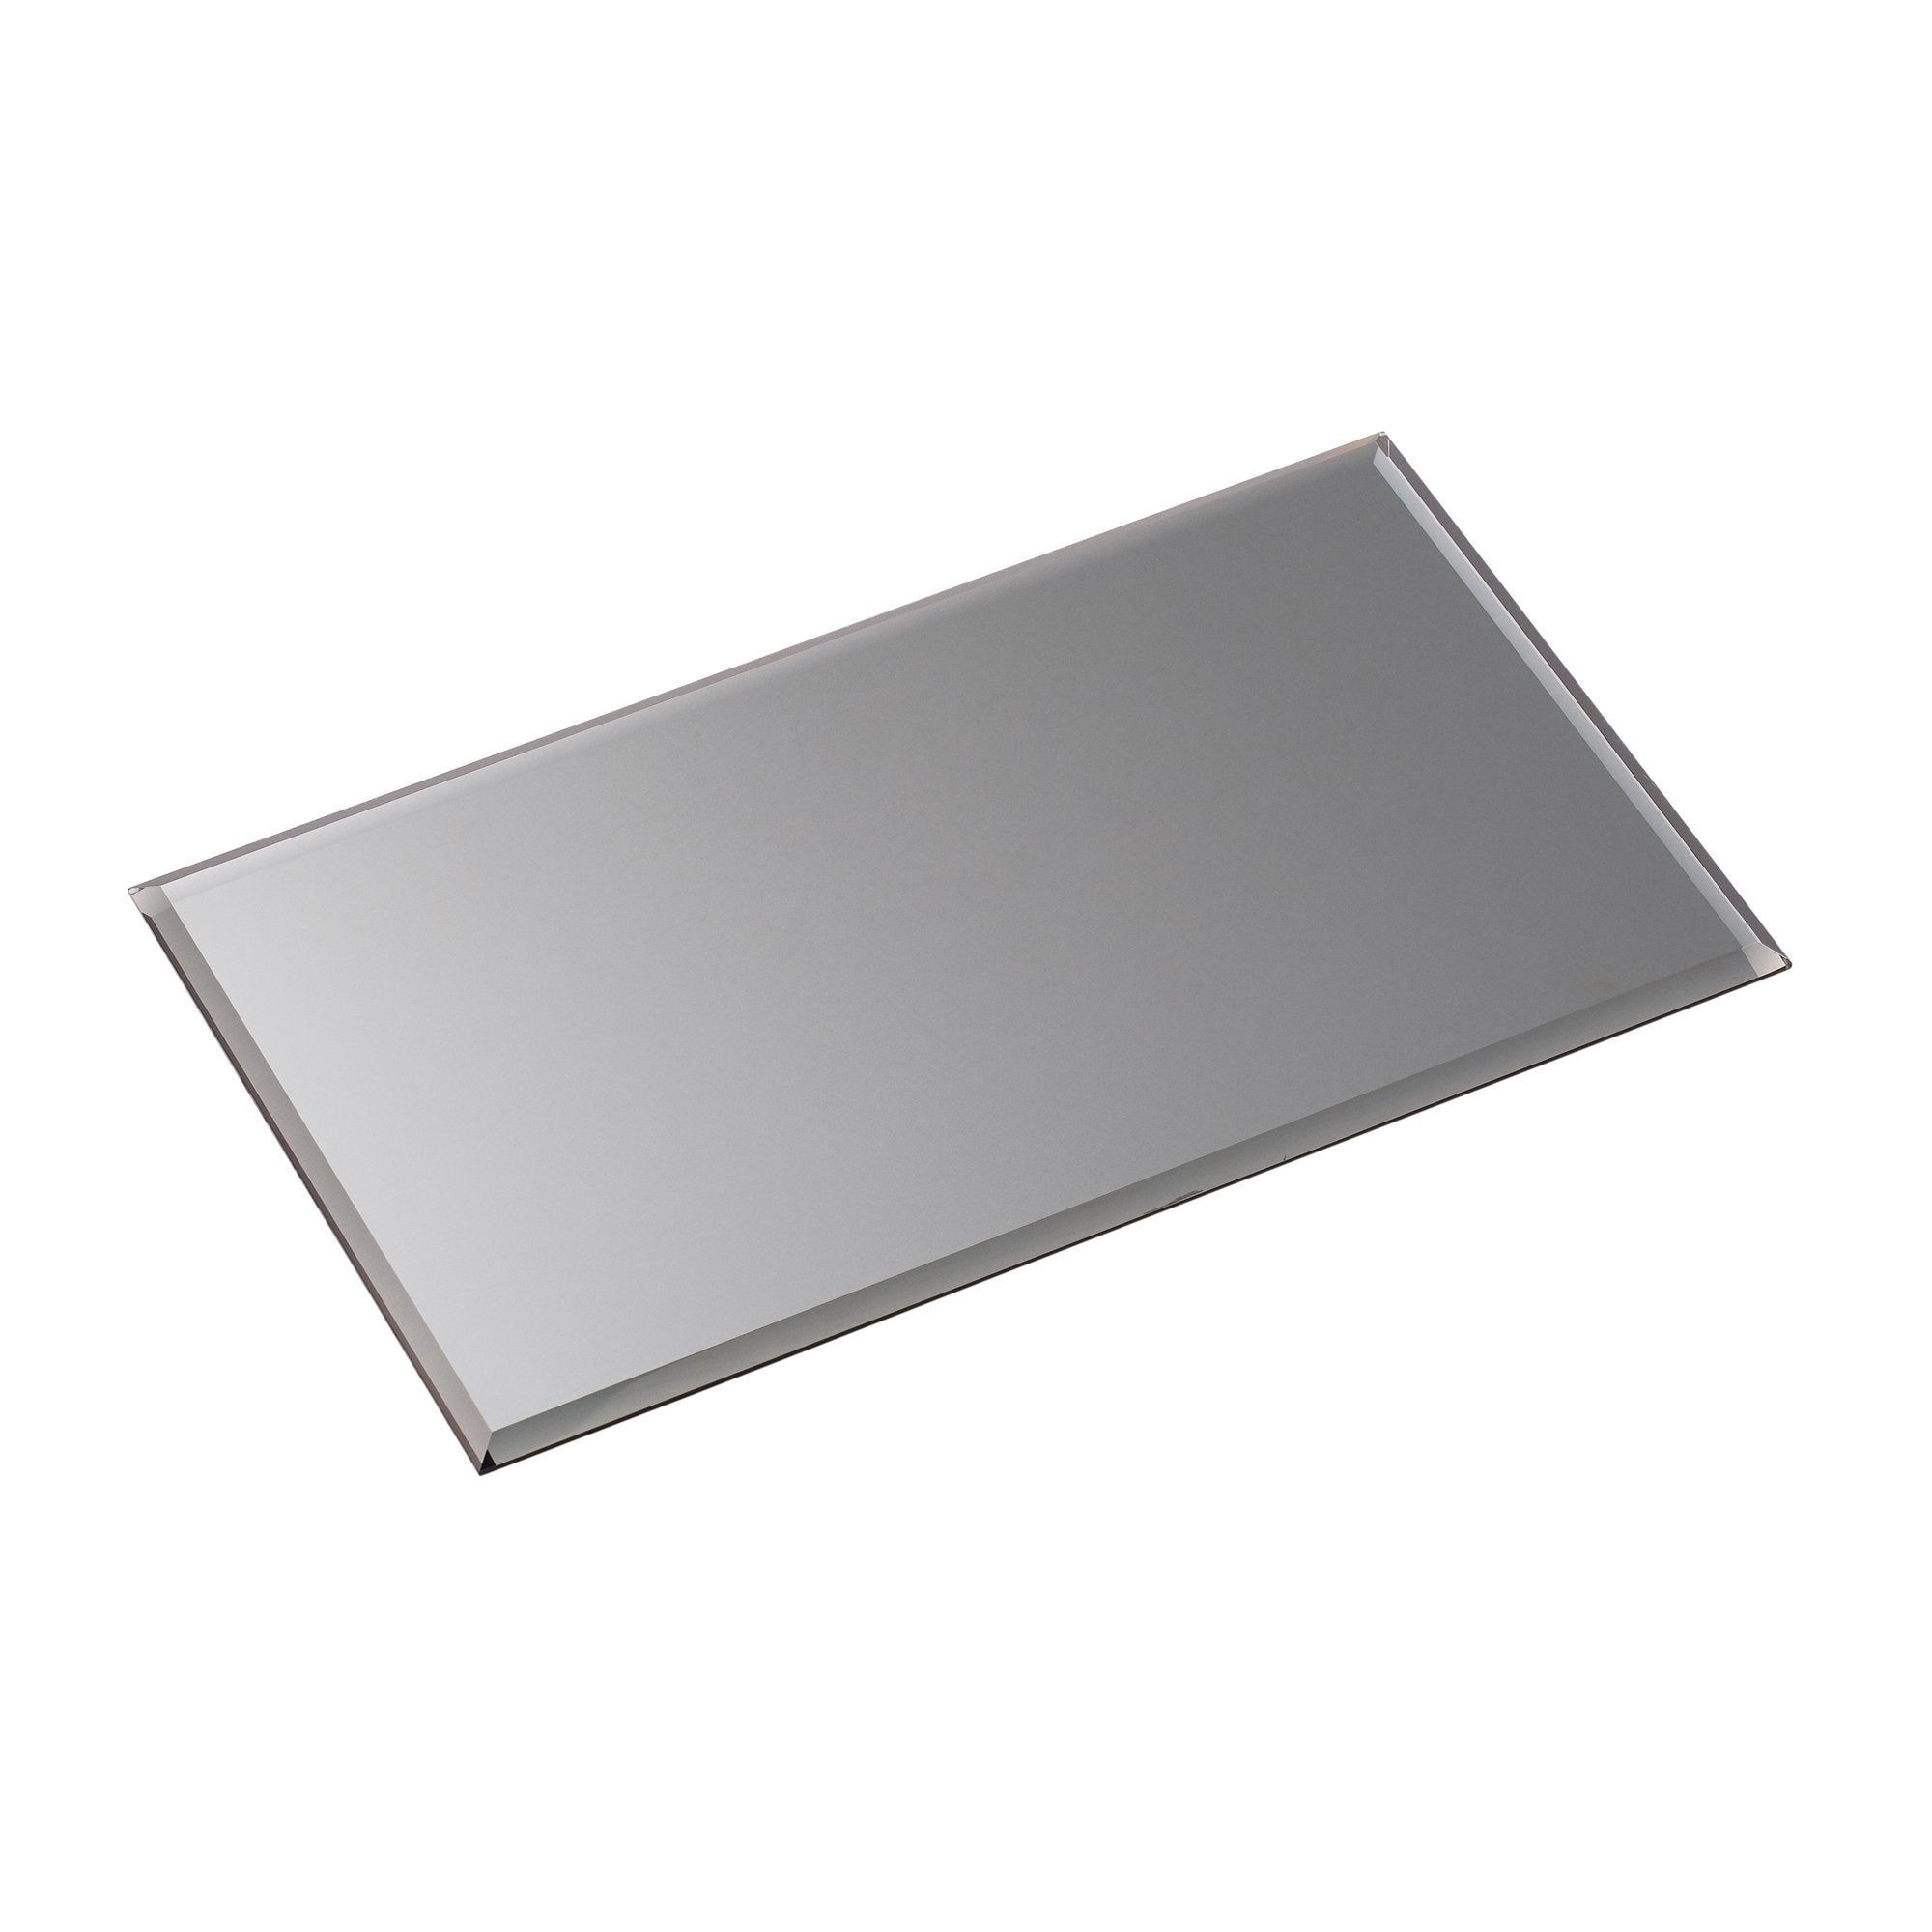 Placa de vidrio de Stoff Nagel negro ahumado, rectangular